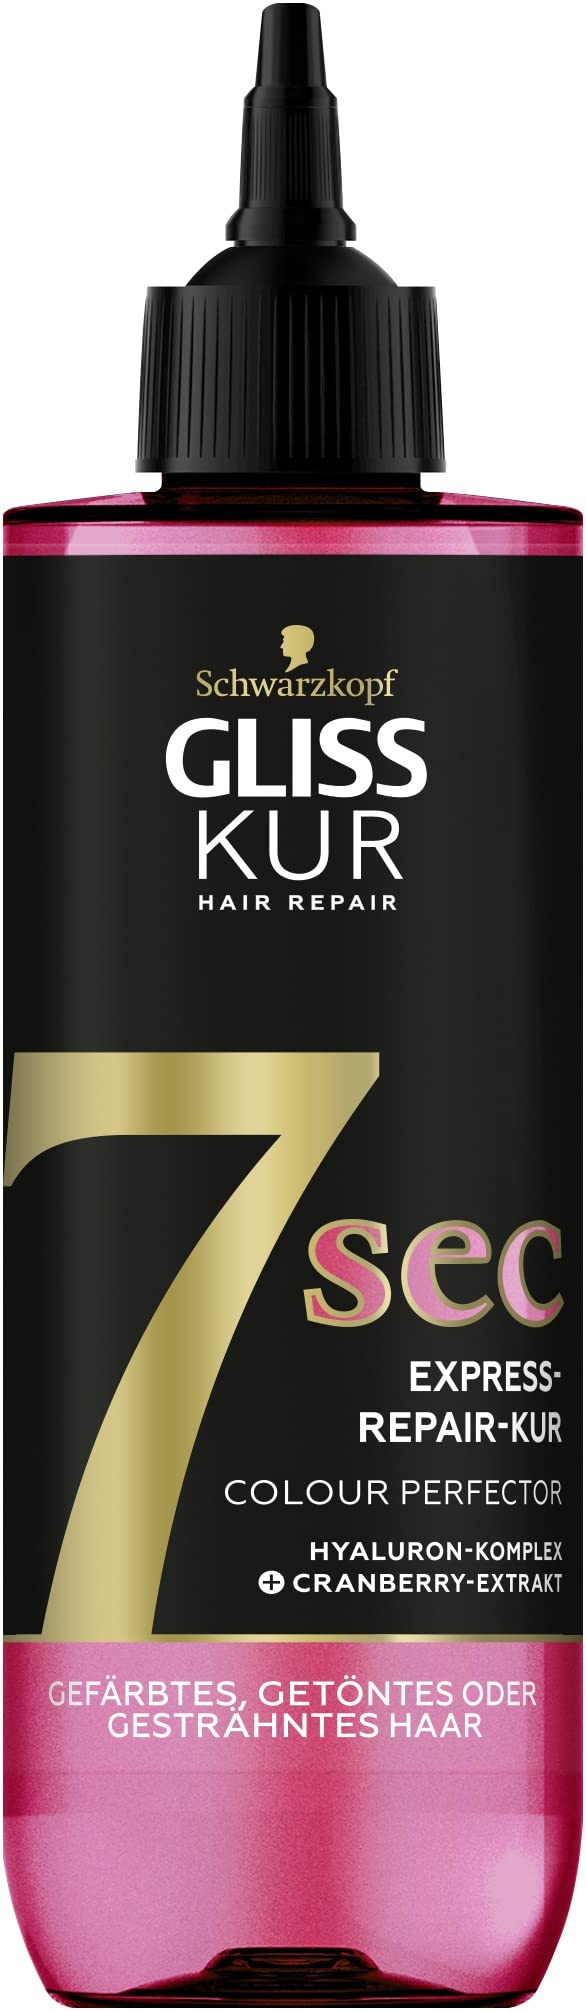 Gliss Kur 7 Sec Express-Repair Kur Colour Perfector (200 ml), Haarkur repariert das Haar in nur 7 Sekunden, für 7x stärkeres Haar und 7x weniger Haarbruch